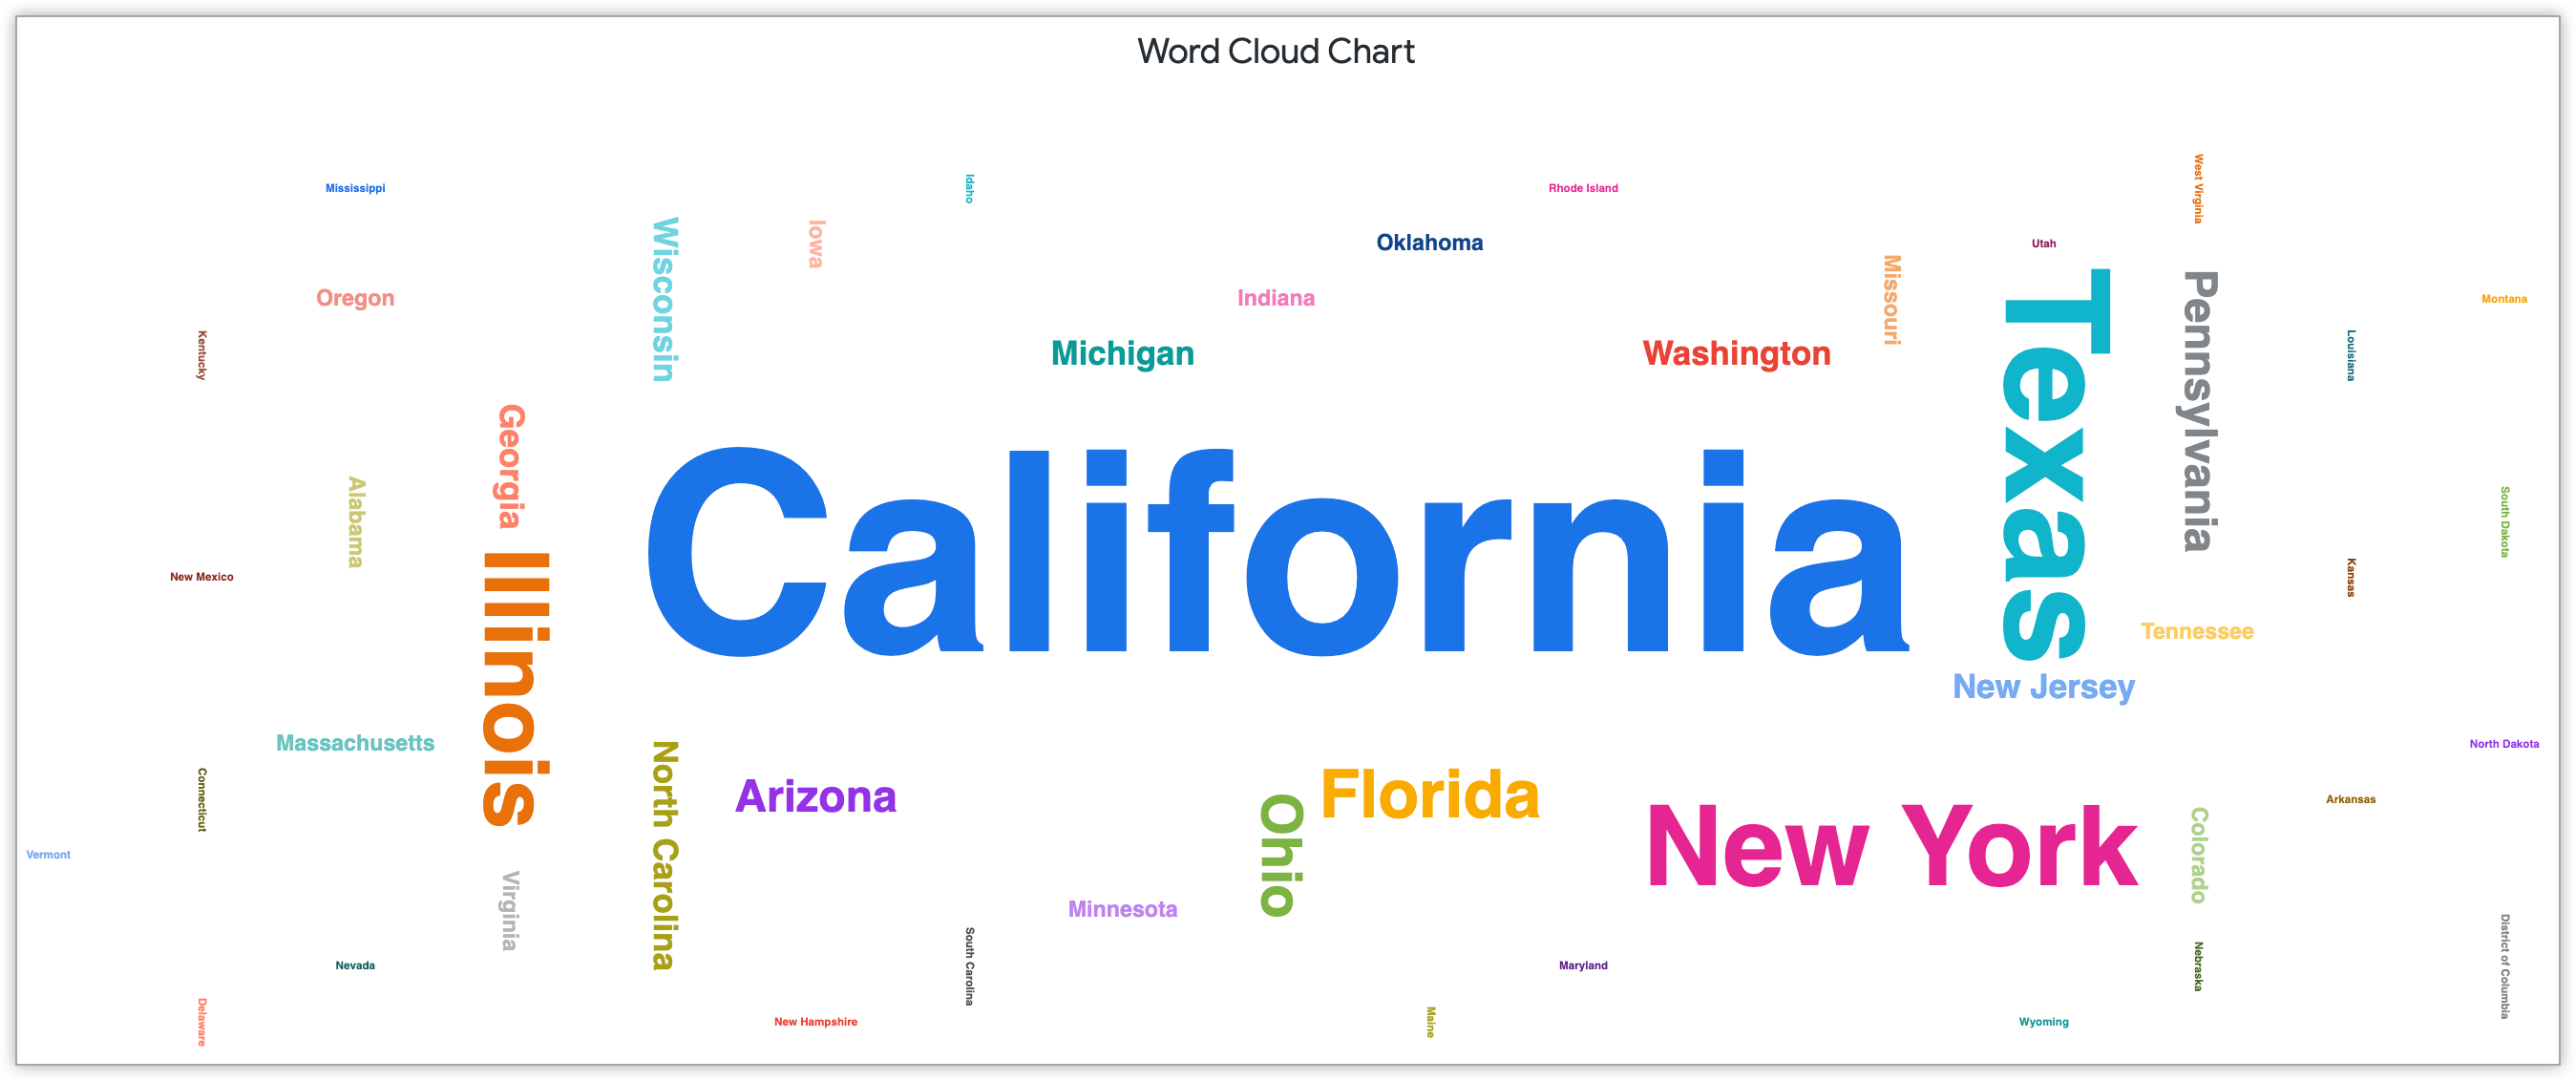 Gráfico de nube de palabras que muestra los nombres de los estados según la cantidad de clientes en ese estado.